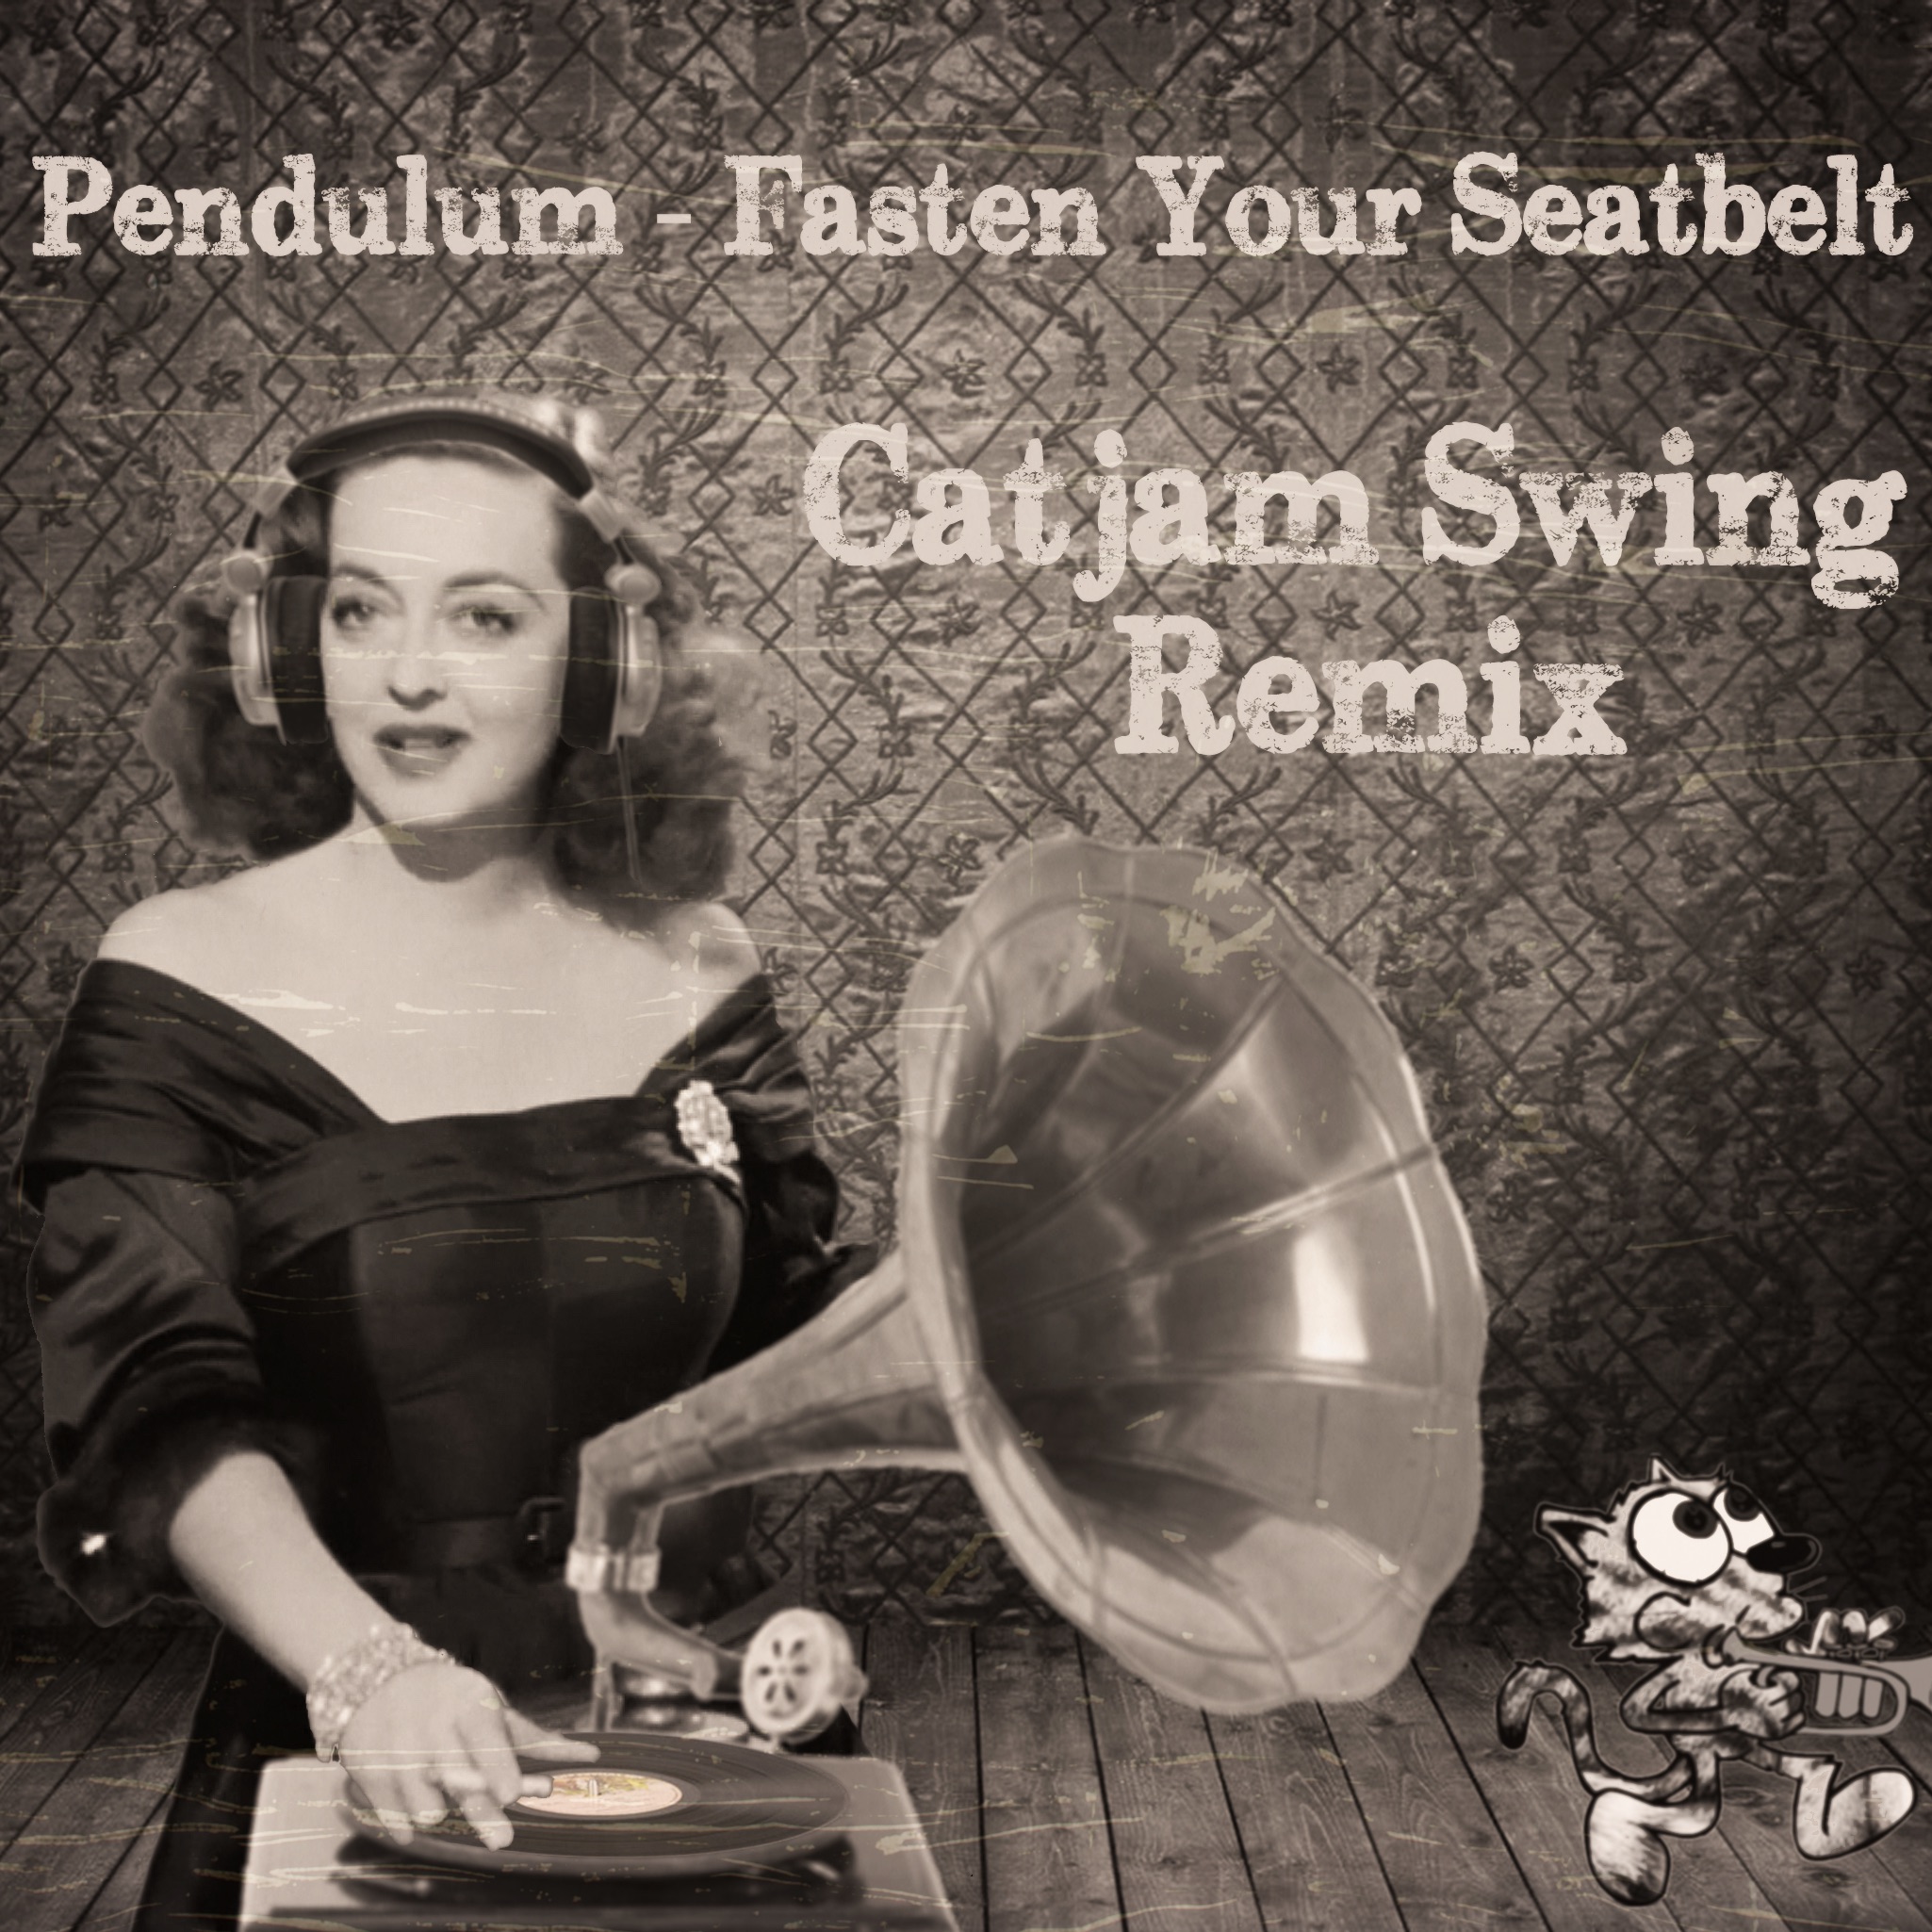 ಡೌನ್ಲೋಡ್ ಮಾಡಿ Fasten Your Seatbelt (Catjam Swing Bootleg) FREE DOWNLOAD!!